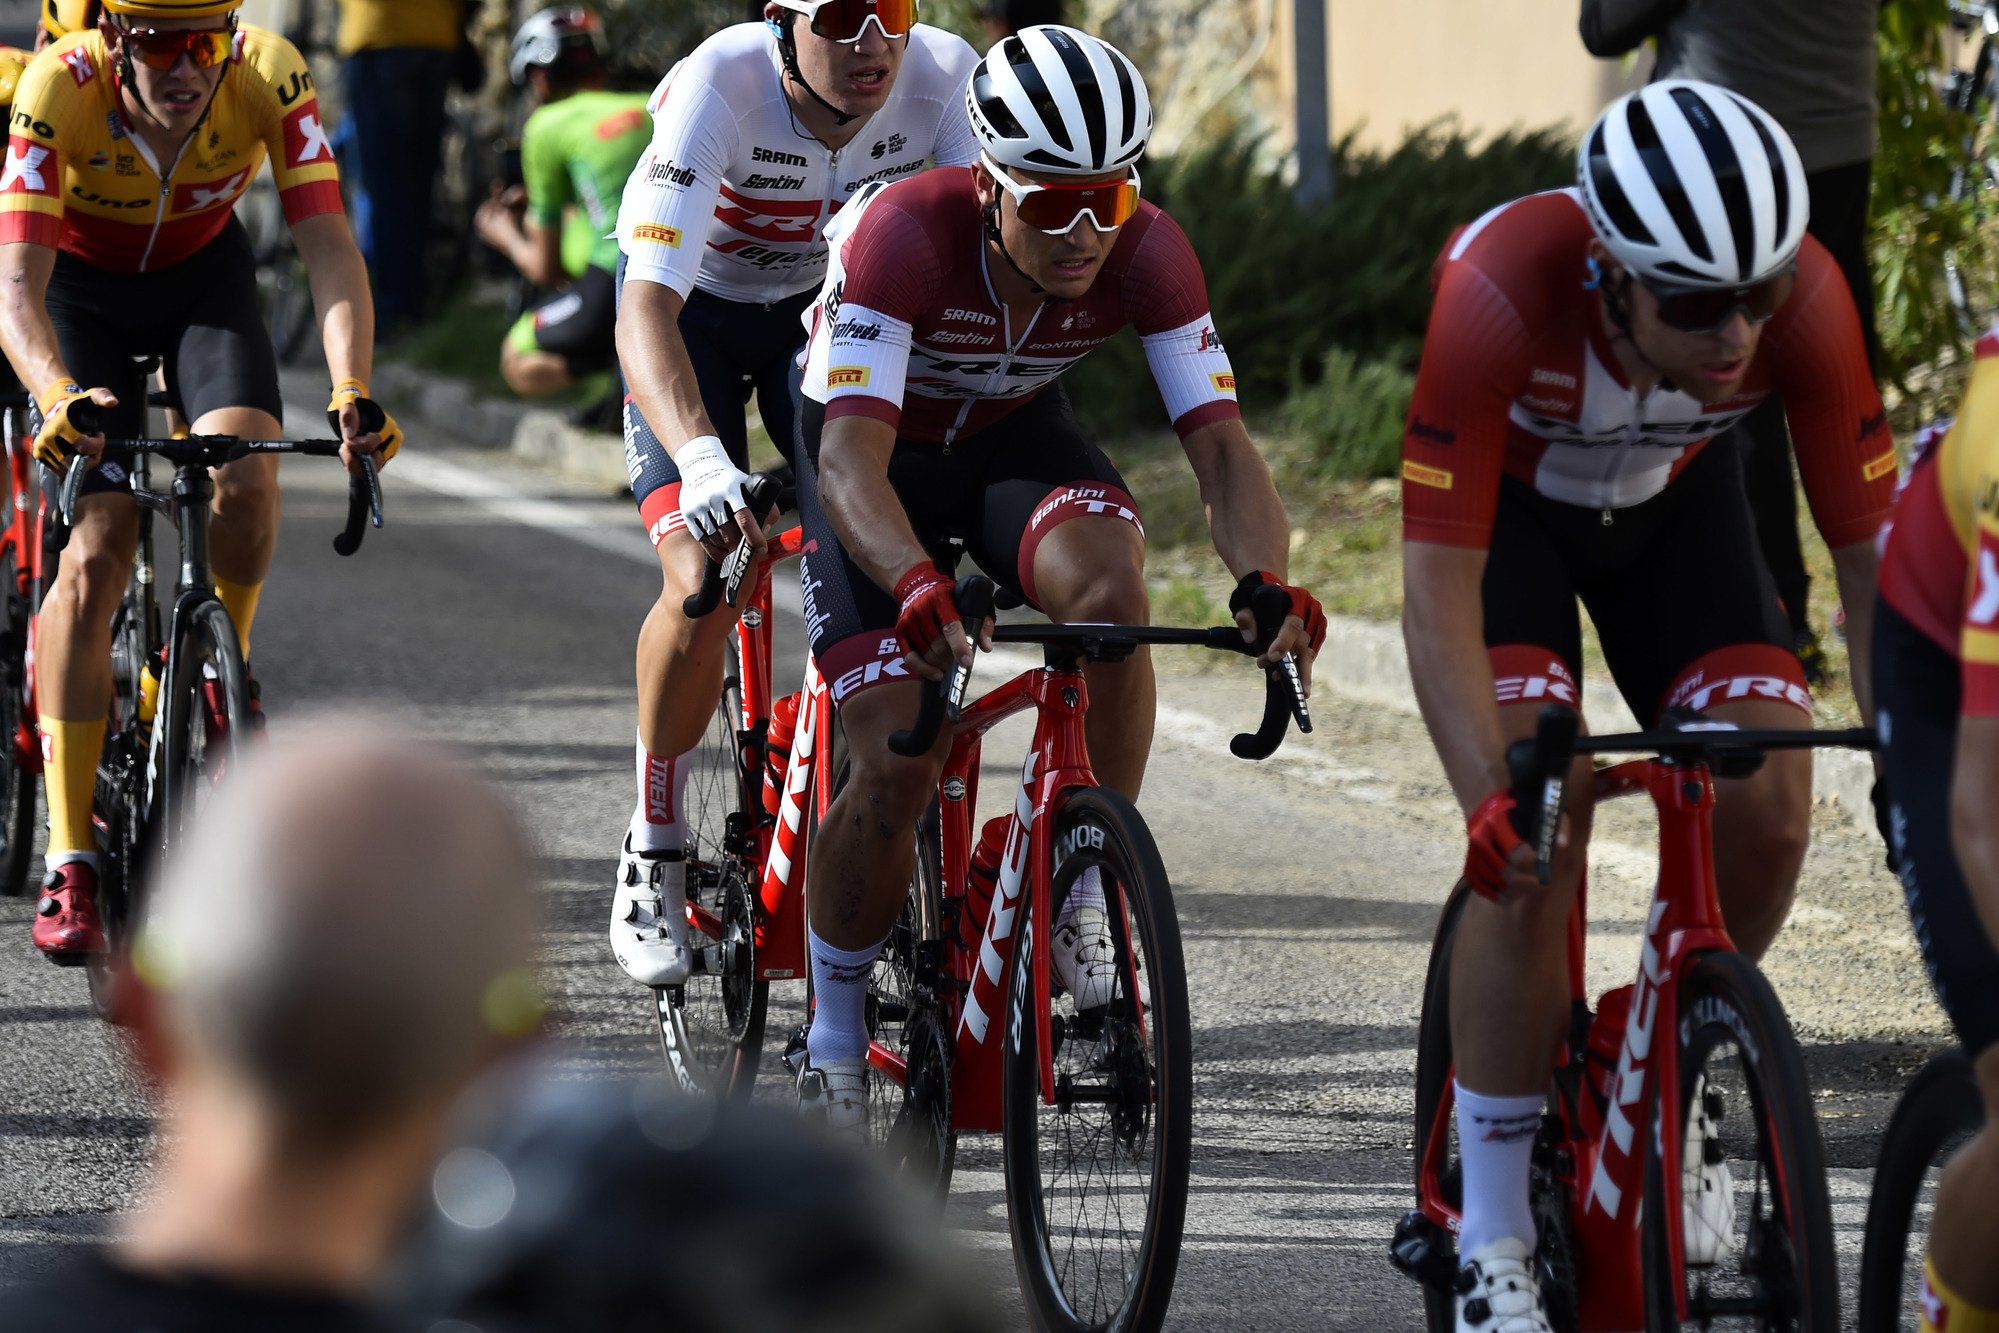 Liepiņš izcīna 14. vietu “Giro de Veneto” velobraucienā